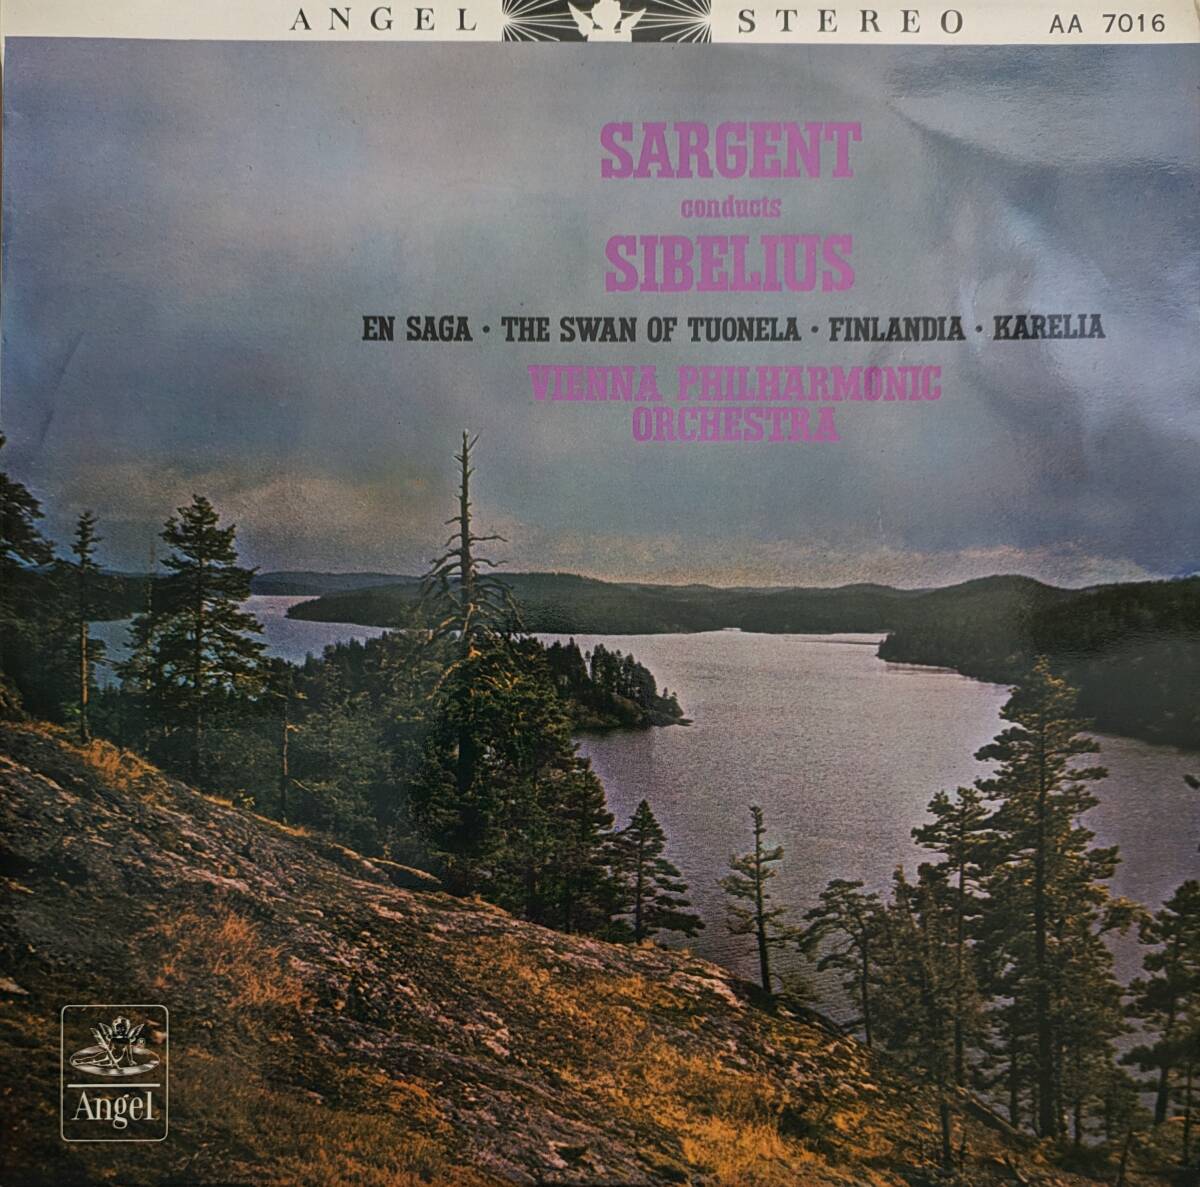 初期LP盤 /マルコム・サージェント/Wienetr Phil　Sibelius 交響詩「フィンランディア」「トゥオネラの白鳥」「伝説」,組曲「カレリア」_画像1